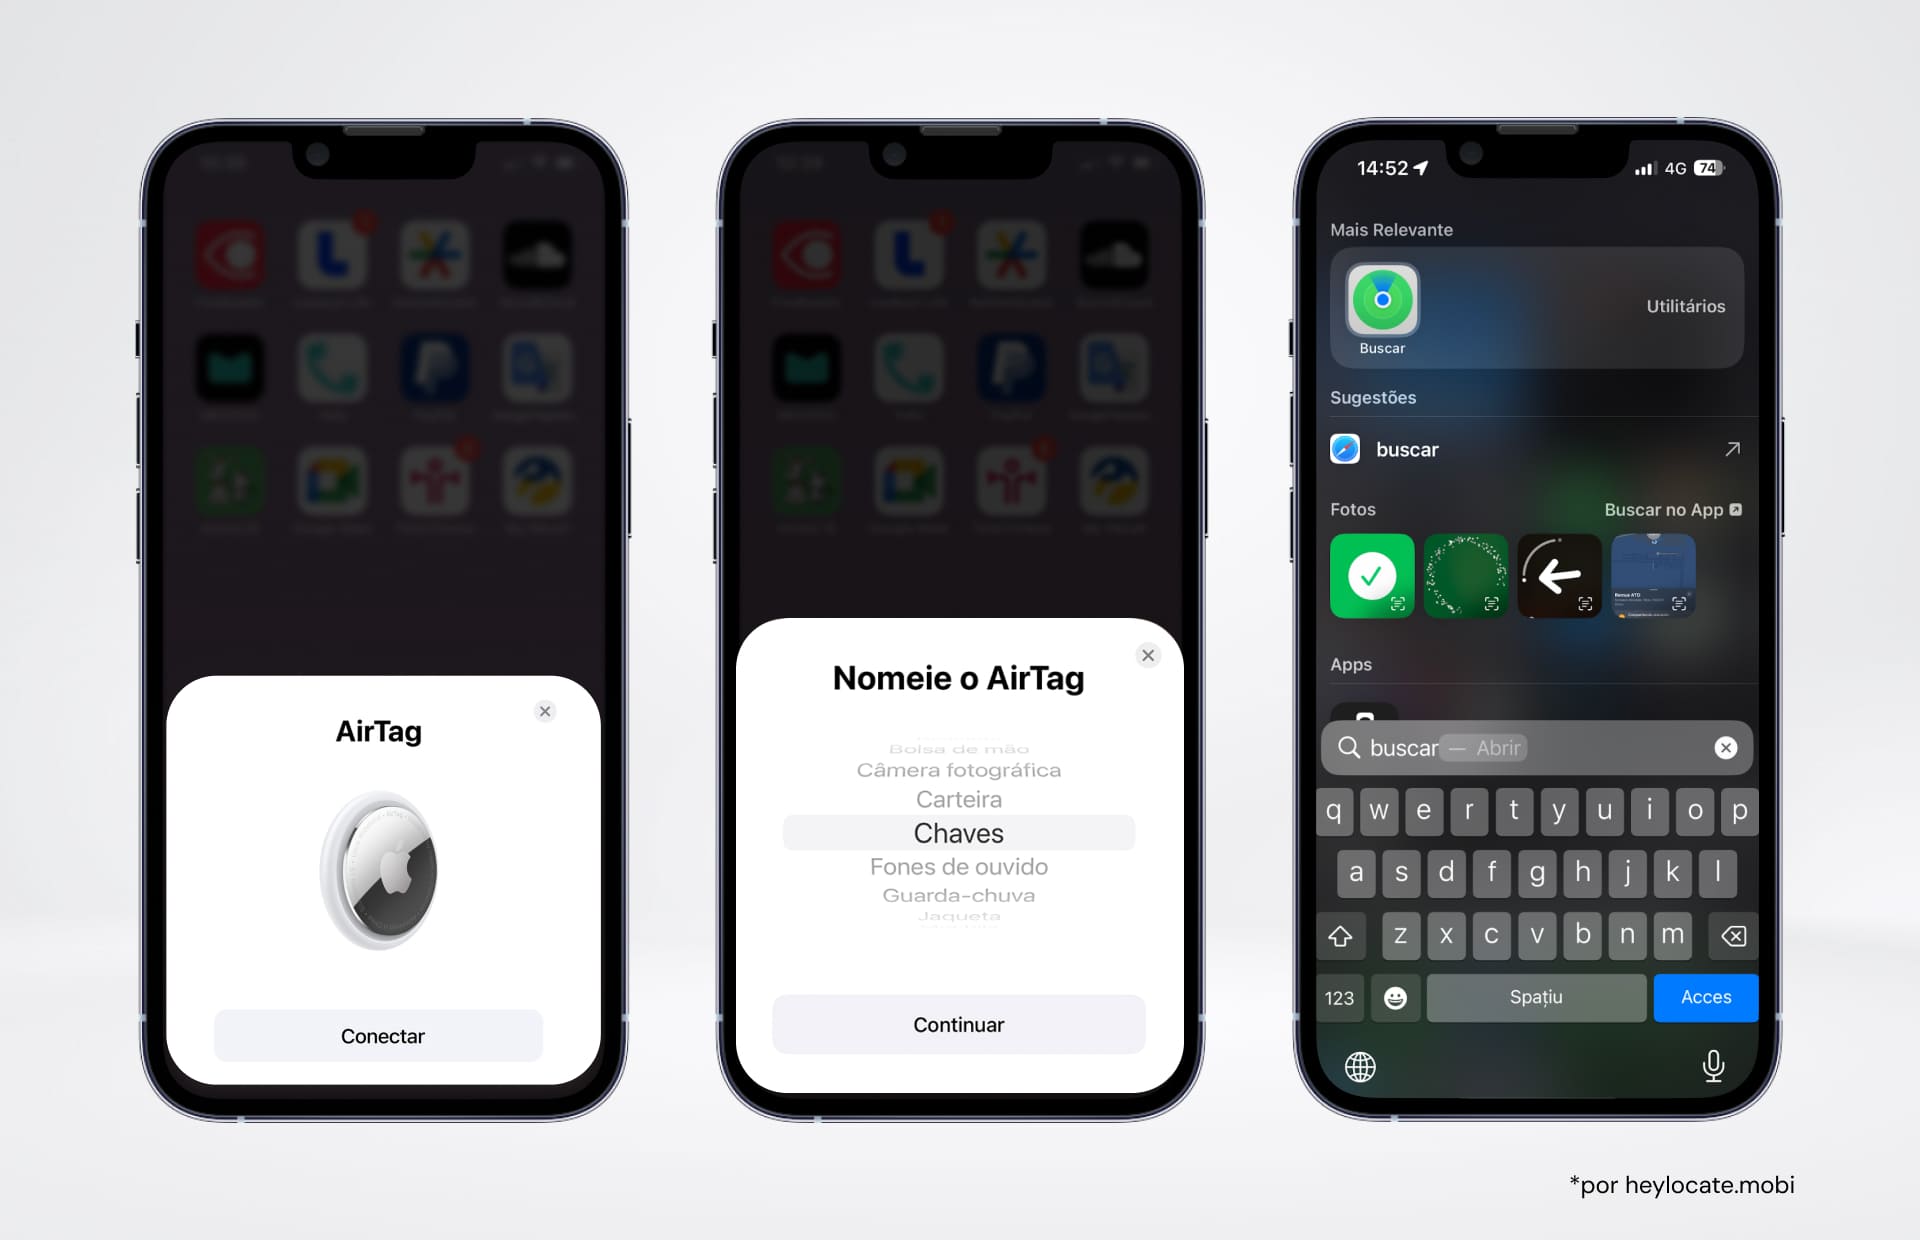 Três iPhones mostrando diferentes estágios de uso do Apple AirTag. O primeiro mostra a conexão com o AirTag, o segundo mostra a interface de nomeação do AirTag e o terceiro mostra a entrada para o aplicativo Buscar